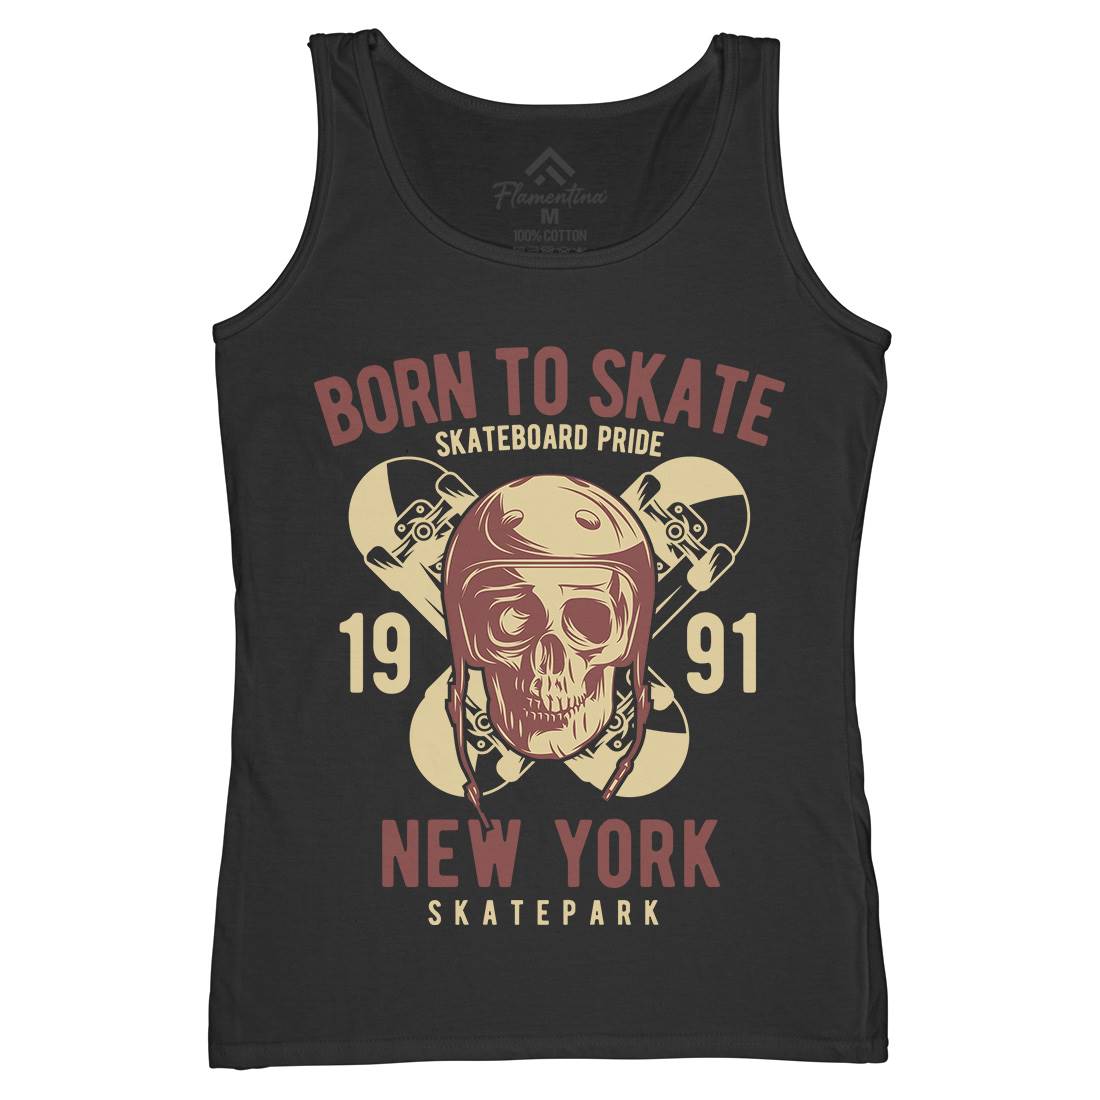 Skater Womens Organic Tank Top Vest Skate B338